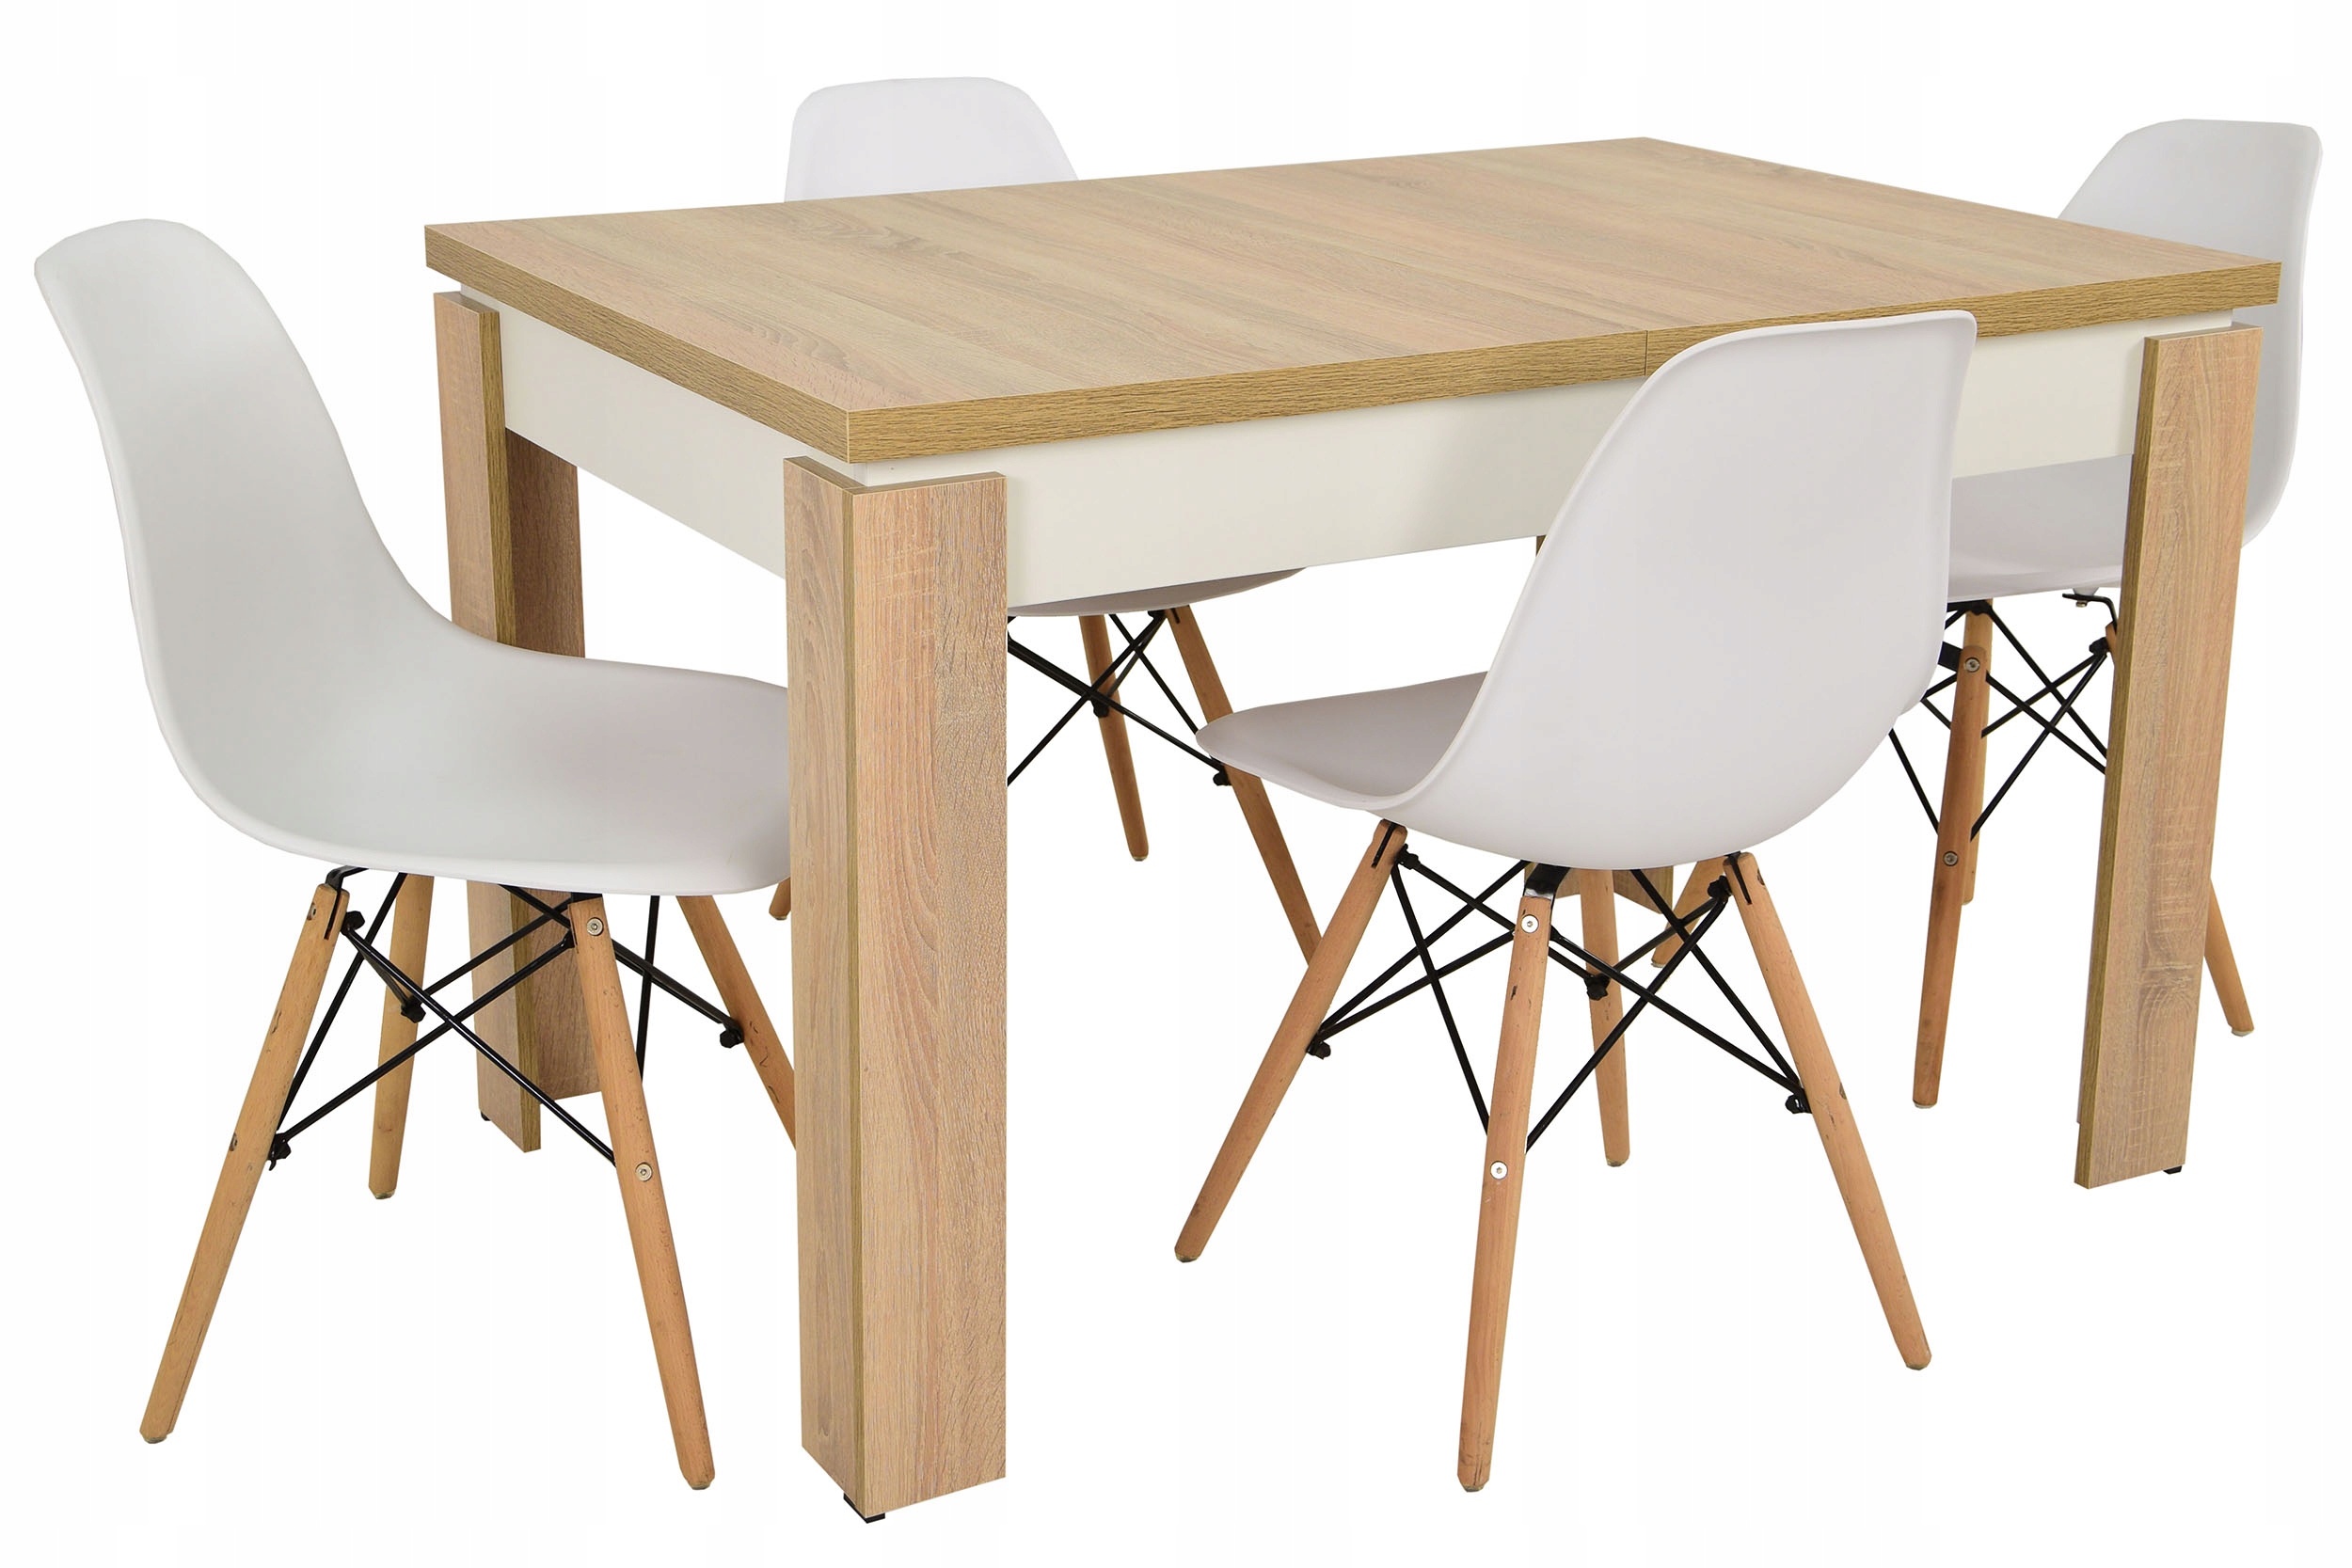 Kuchyňa sada 4 stoličky +stôl skladací SONOMA